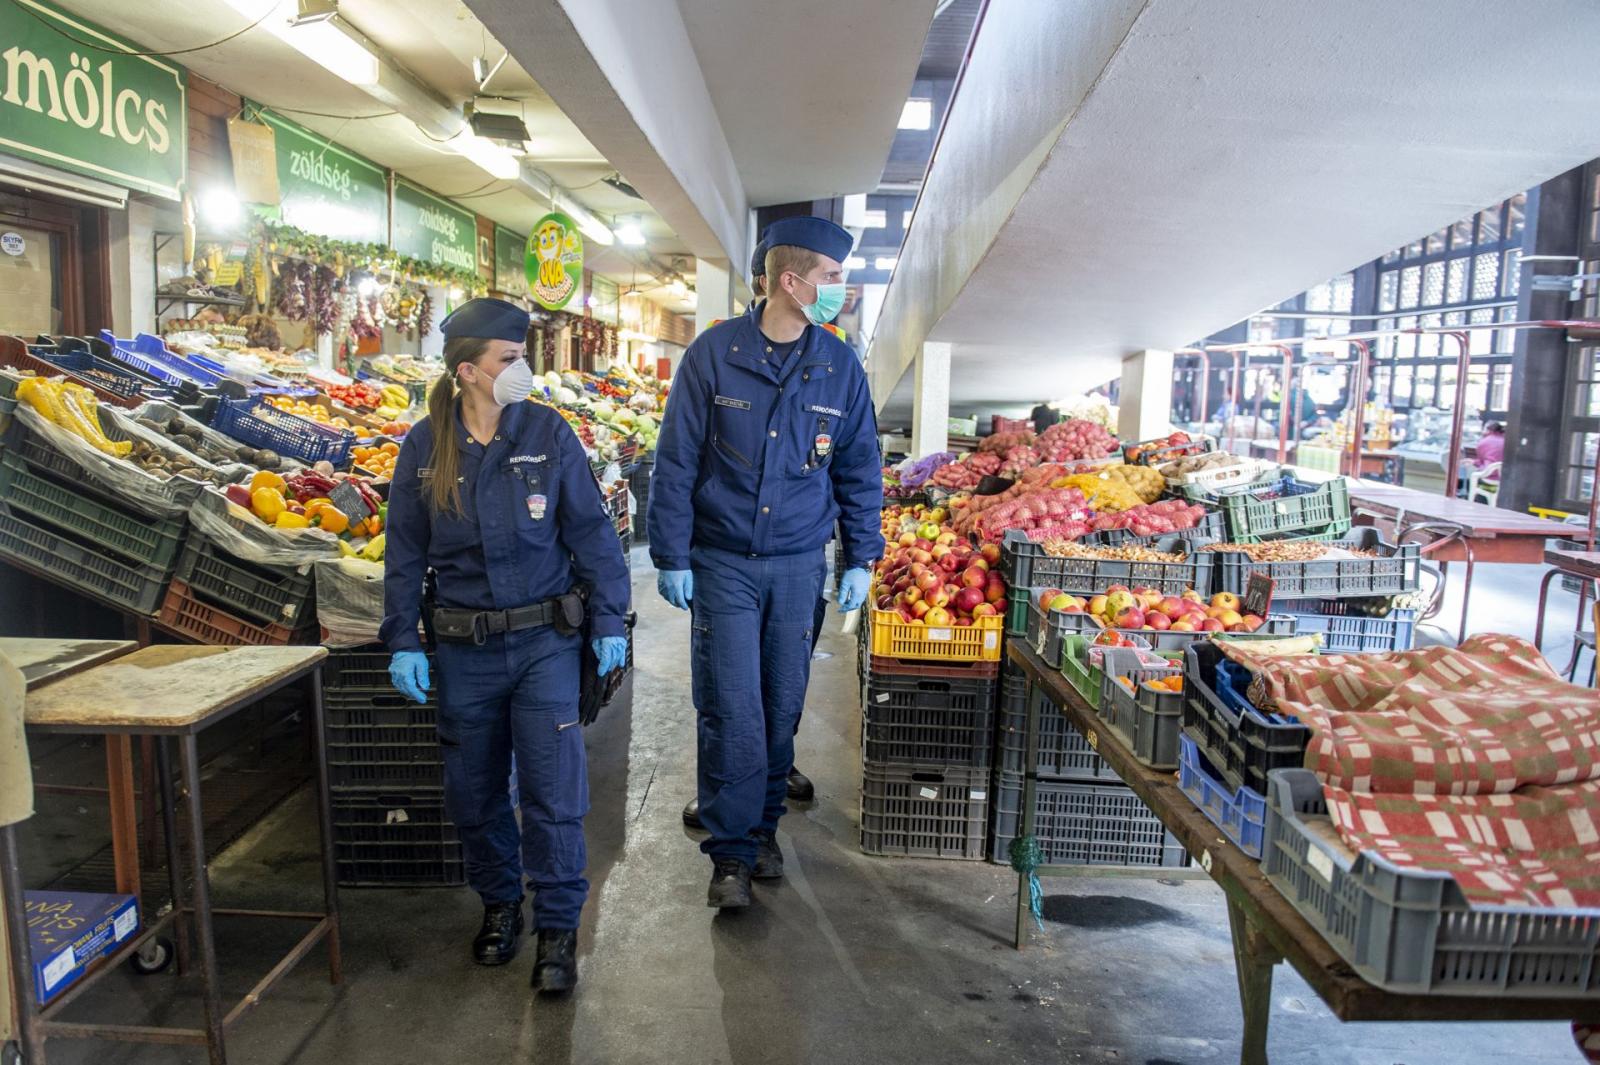 Rendőrjárőrök a piacon. Forrás: poliice.hu